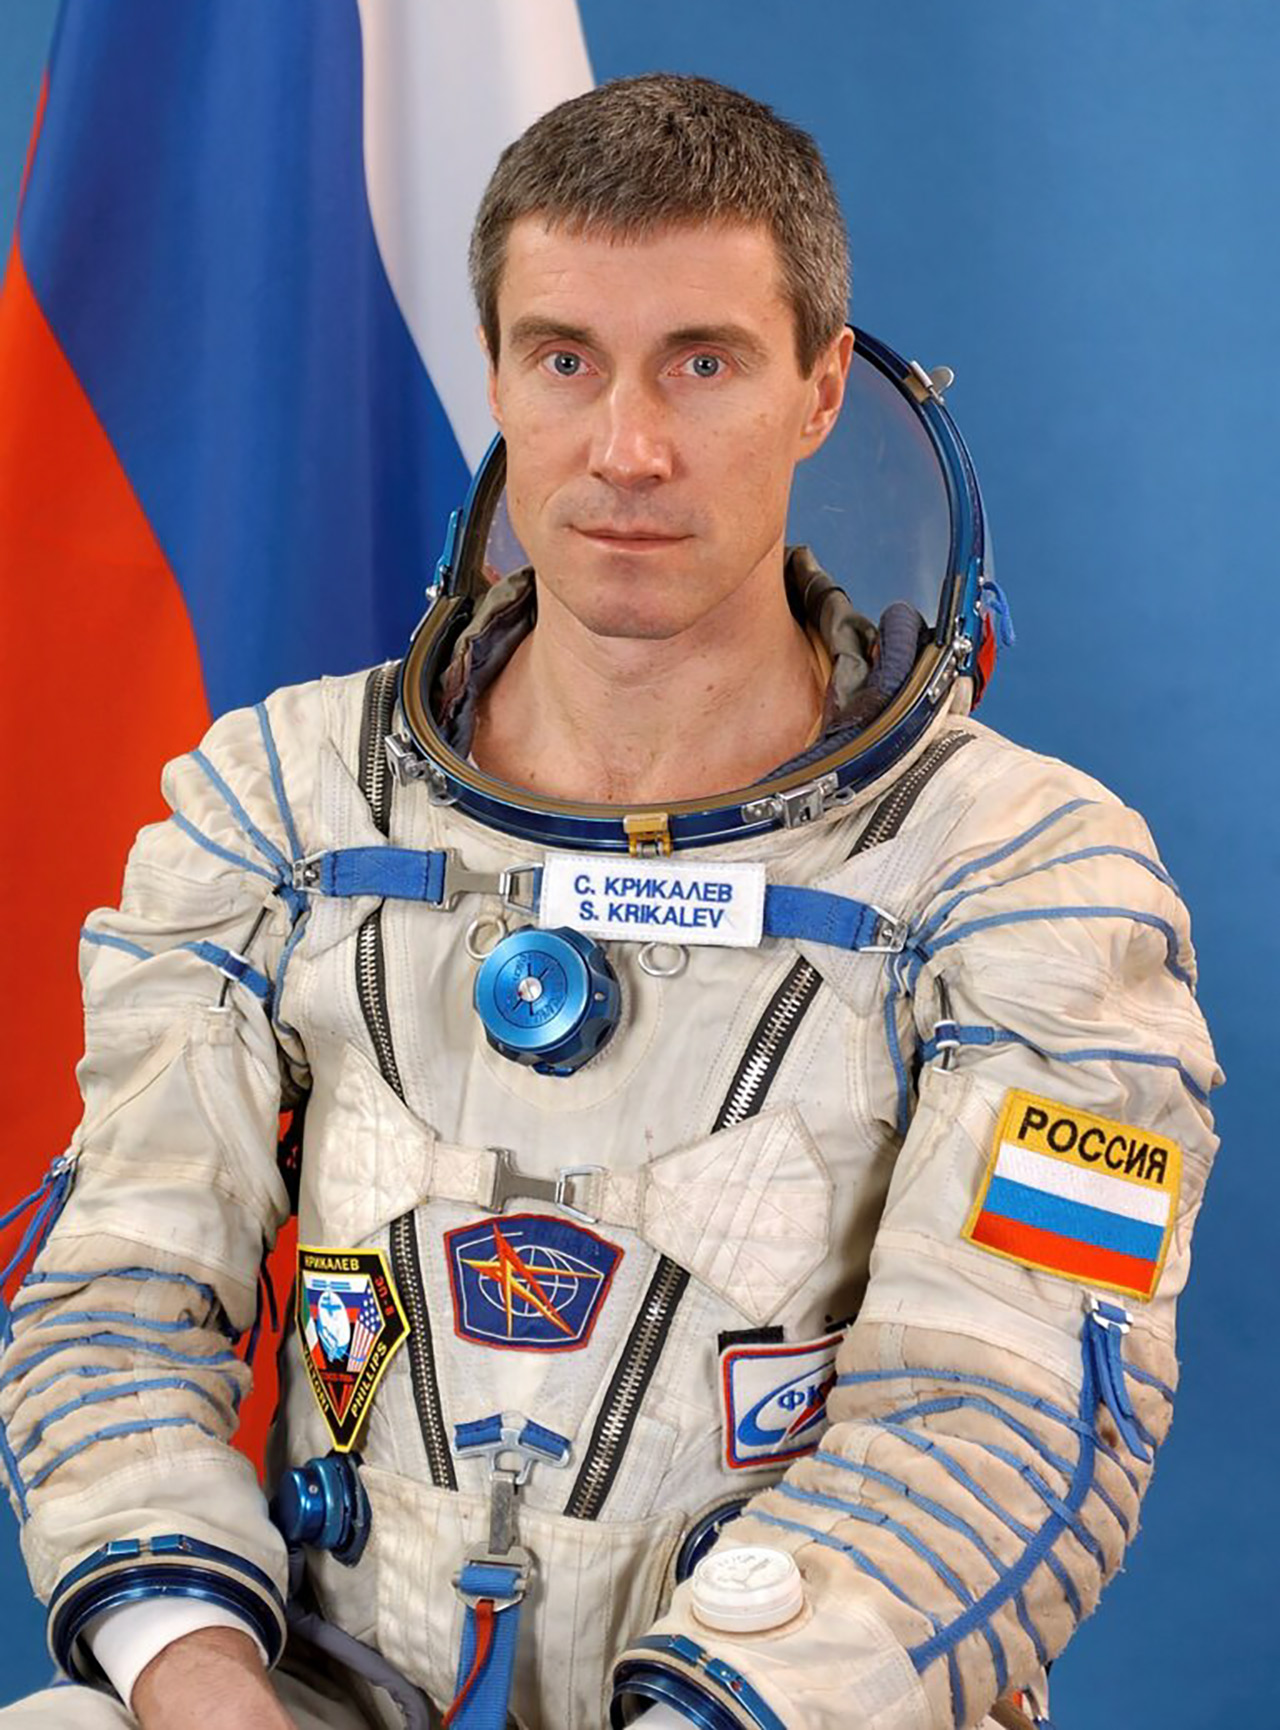 Sergei Krikalev